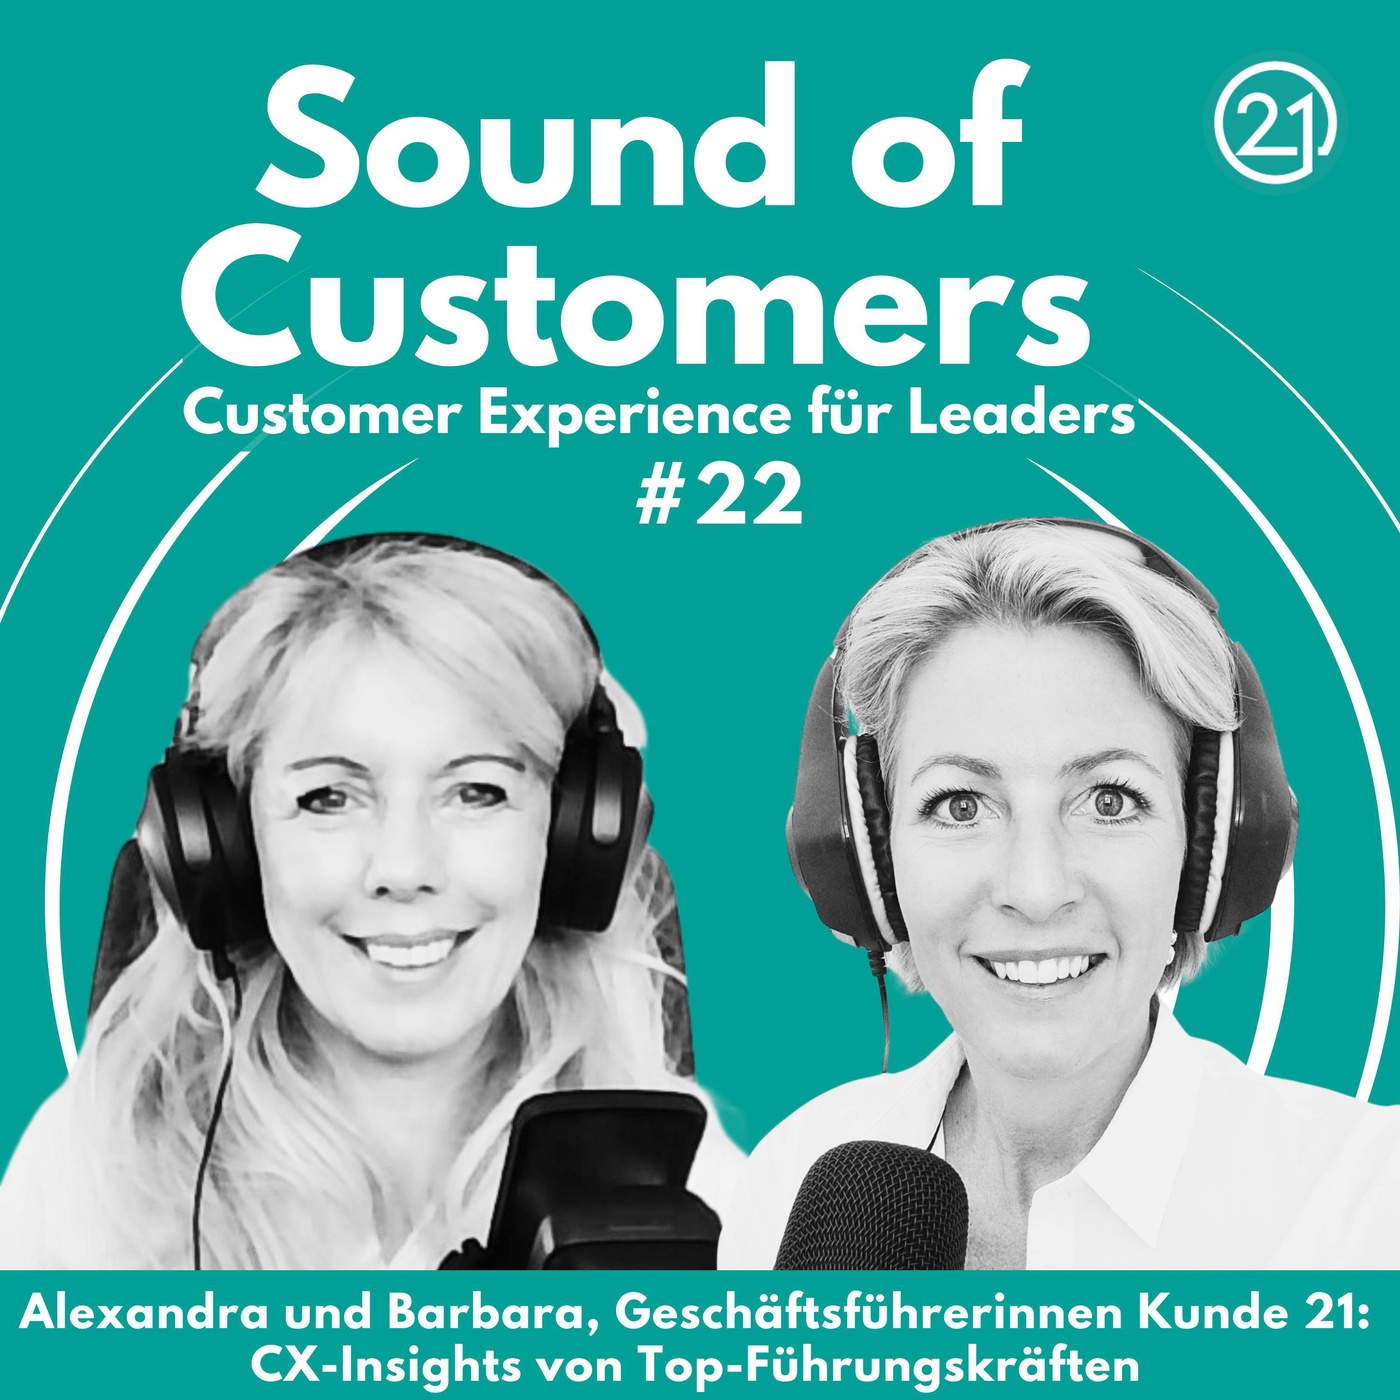 Alexandra Nagy und Barbara Aigner, Geschäftsführerinnen Kunde 21:  Customer Experience-Insights von Top-Führungskräften